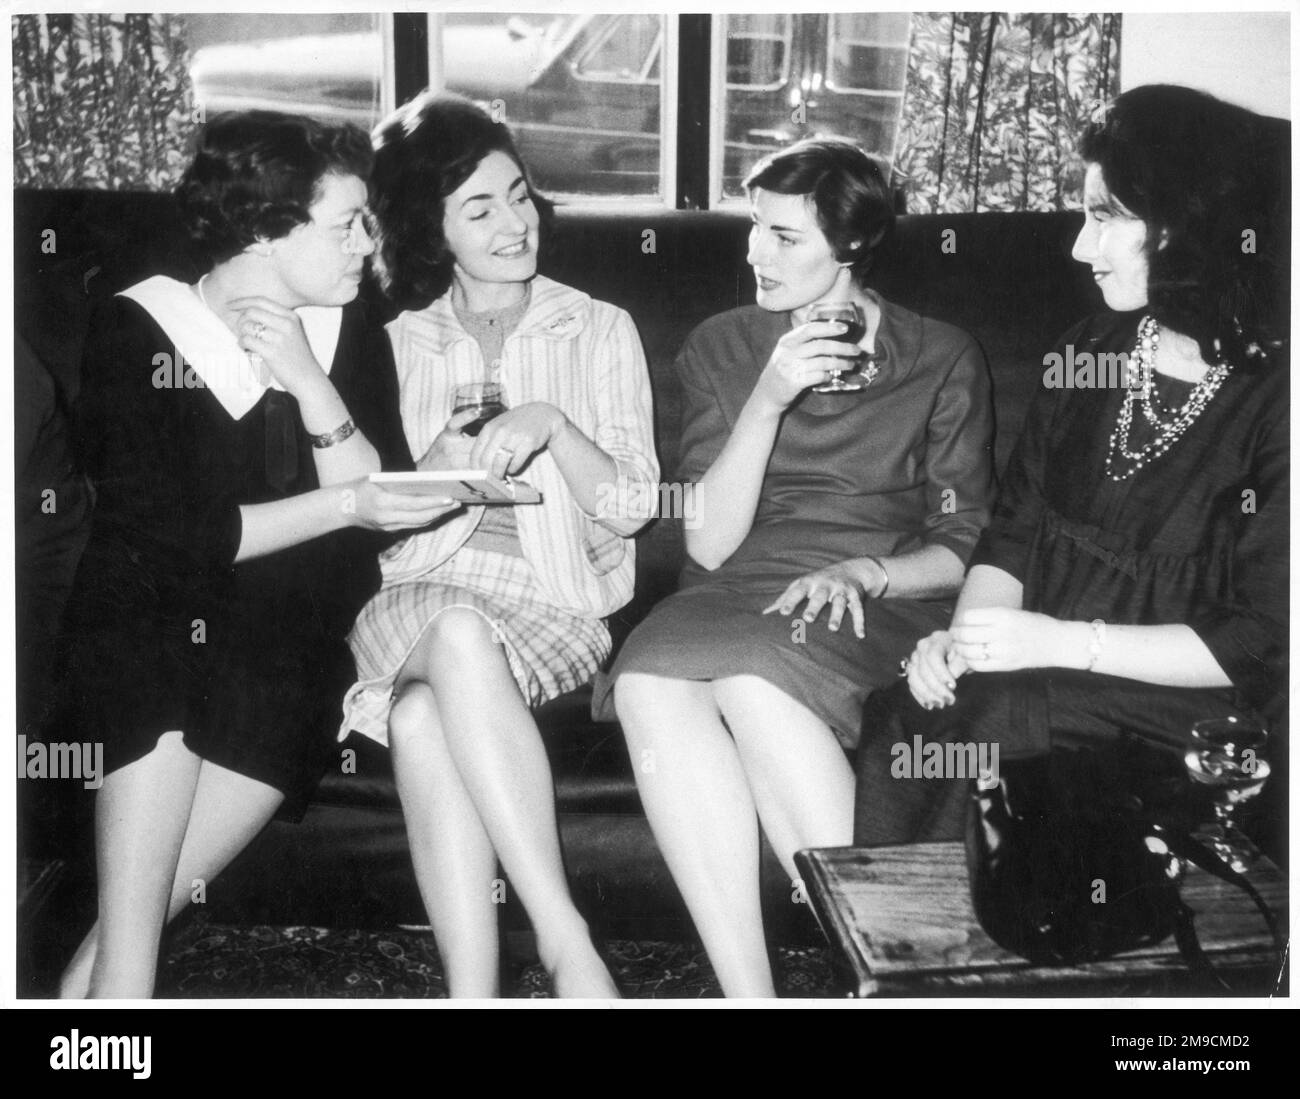 Vier junge Frauen geben eine Schachtel Pralinen und teilen sich ein zivilisiertes Glas Wein in einem Pub. Stockfoto